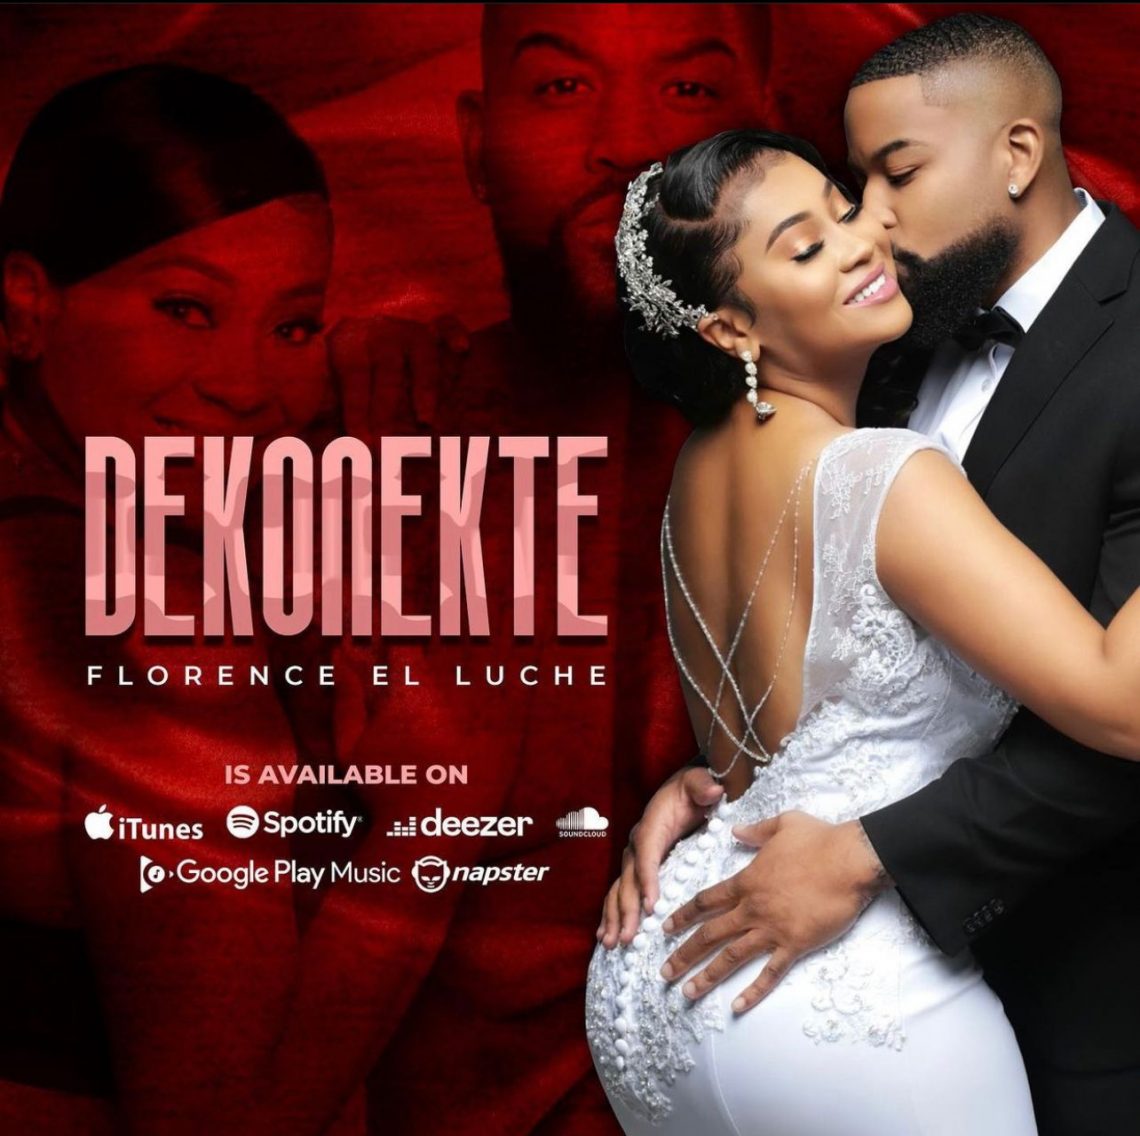 Florence El Luche’s Song 'Dekonekte' Reaches 700K Views In Three Days